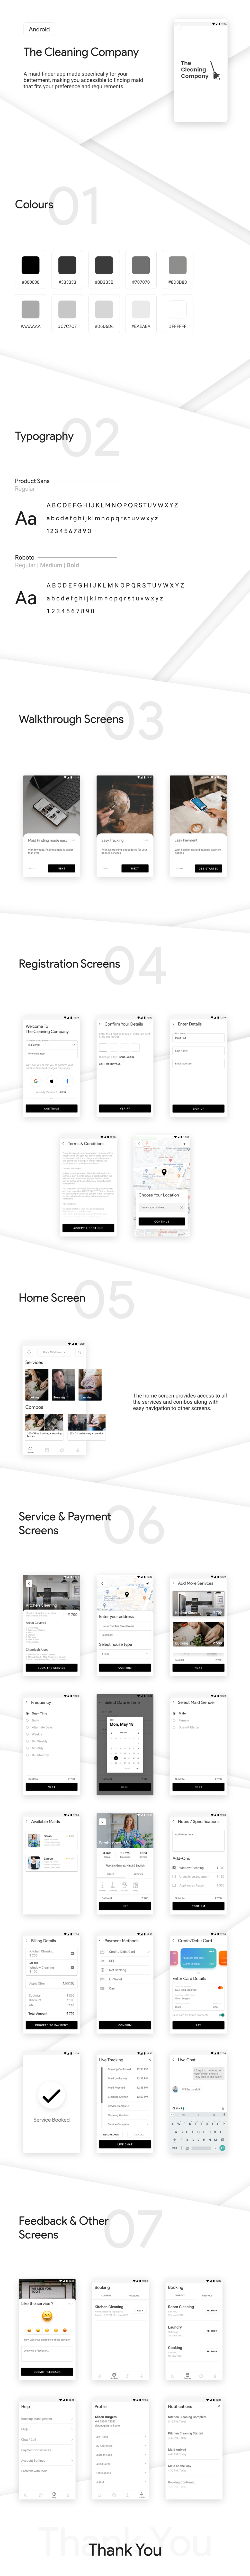 android app house help maid maid finder material design portfolio UI ux visual design